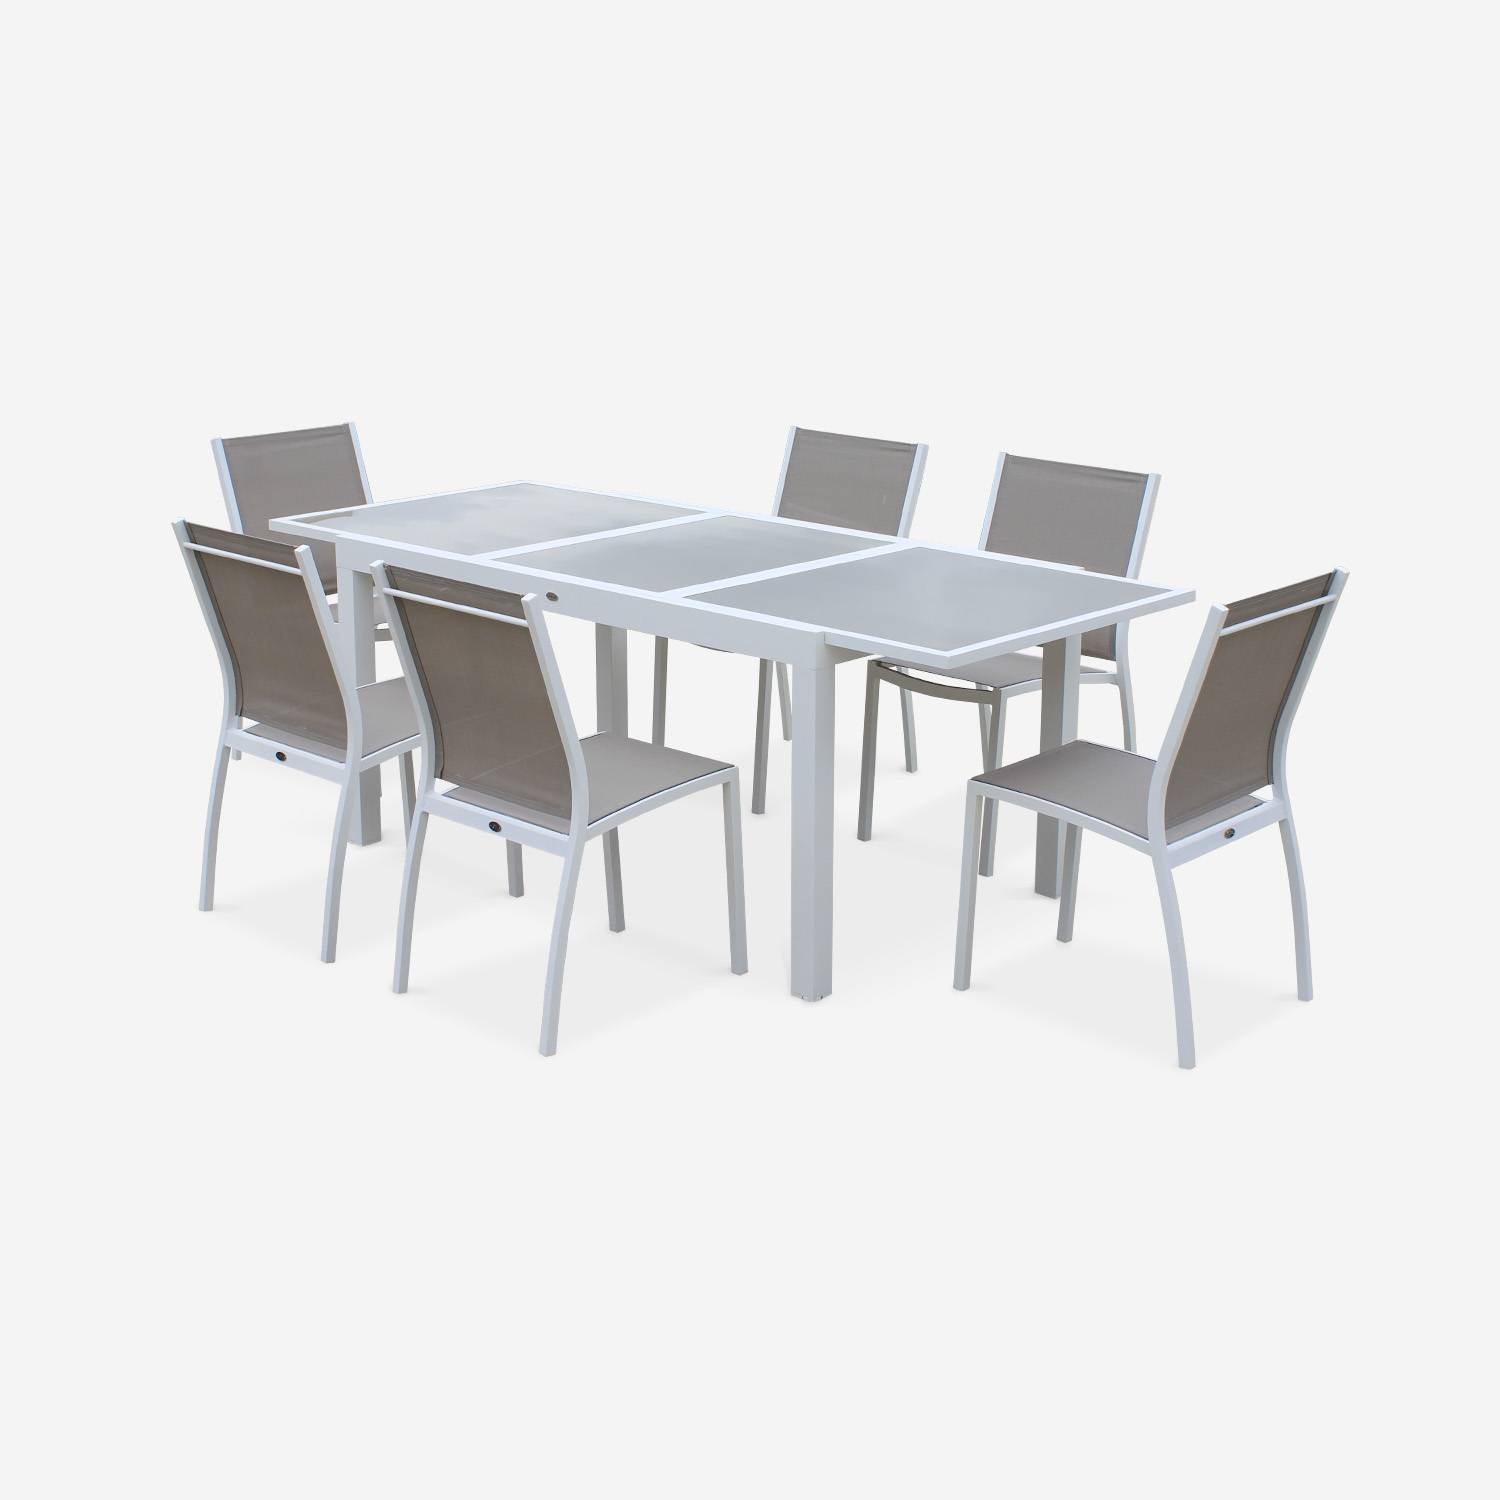 Tavolo da giardino allungabile - modello: Orlando, colore: Talpa - Tavolo in alluminio, dimensioni: 150/210cm, ripiano in vetro, prolunga e 6 sedie in textilene Photo2